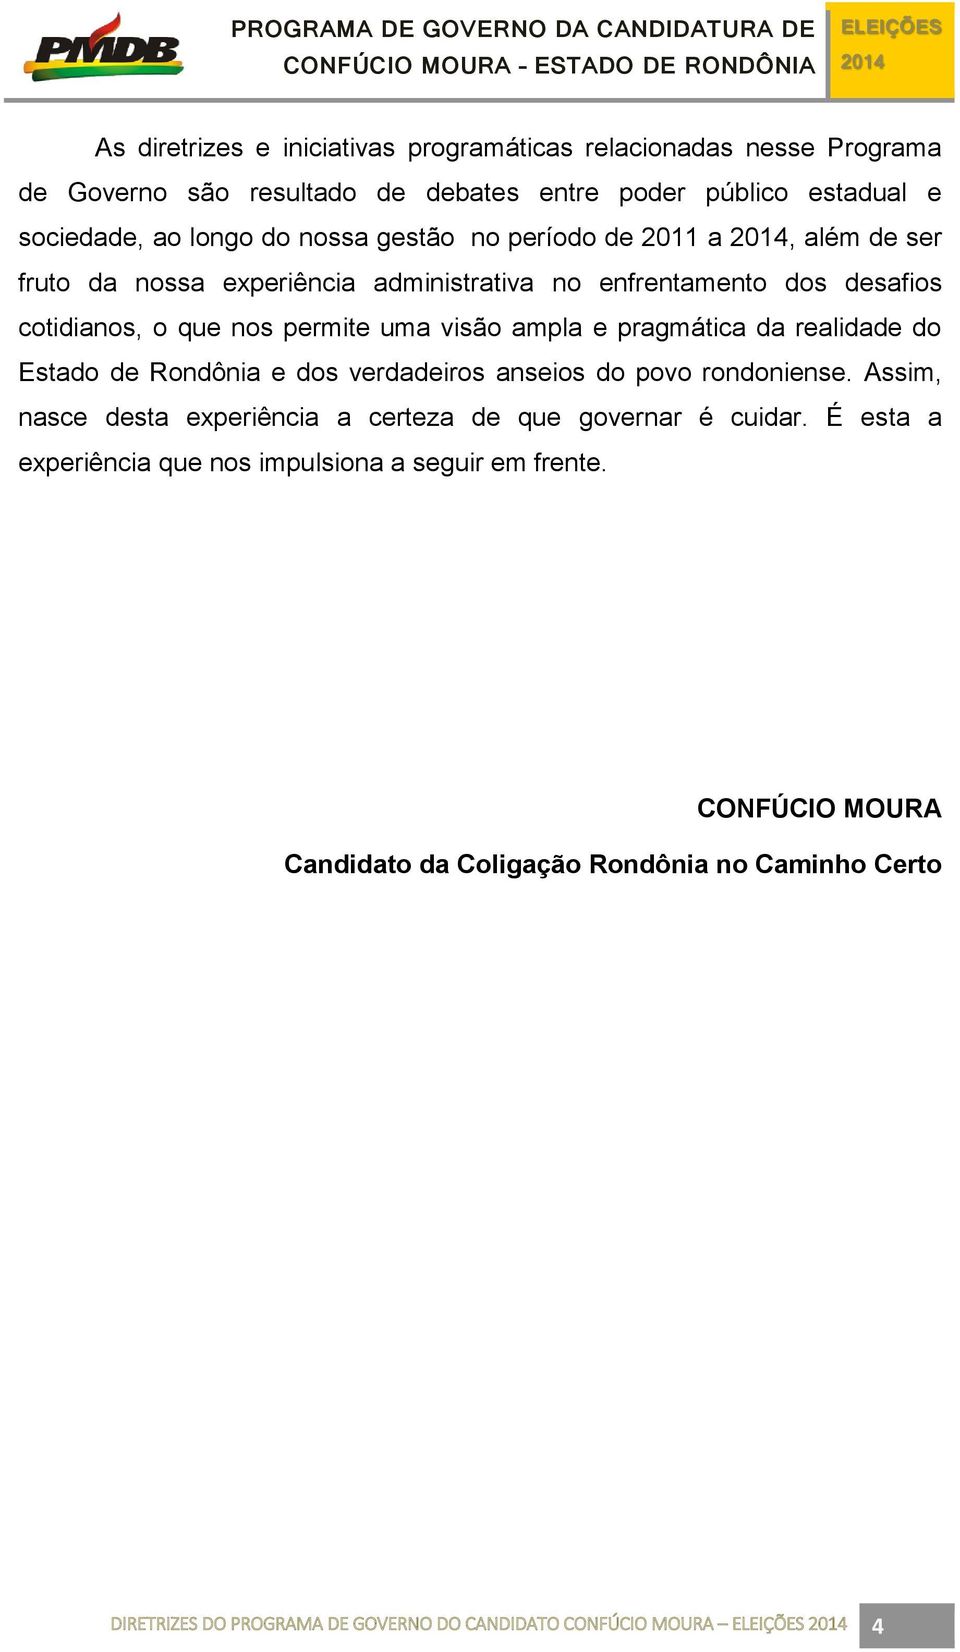 pragmática da realidade do Estado de Rondônia e dos verdadeiros anseios do povo rondoniense. Assim, nasce desta experiência a certeza de que governar é cuidar.